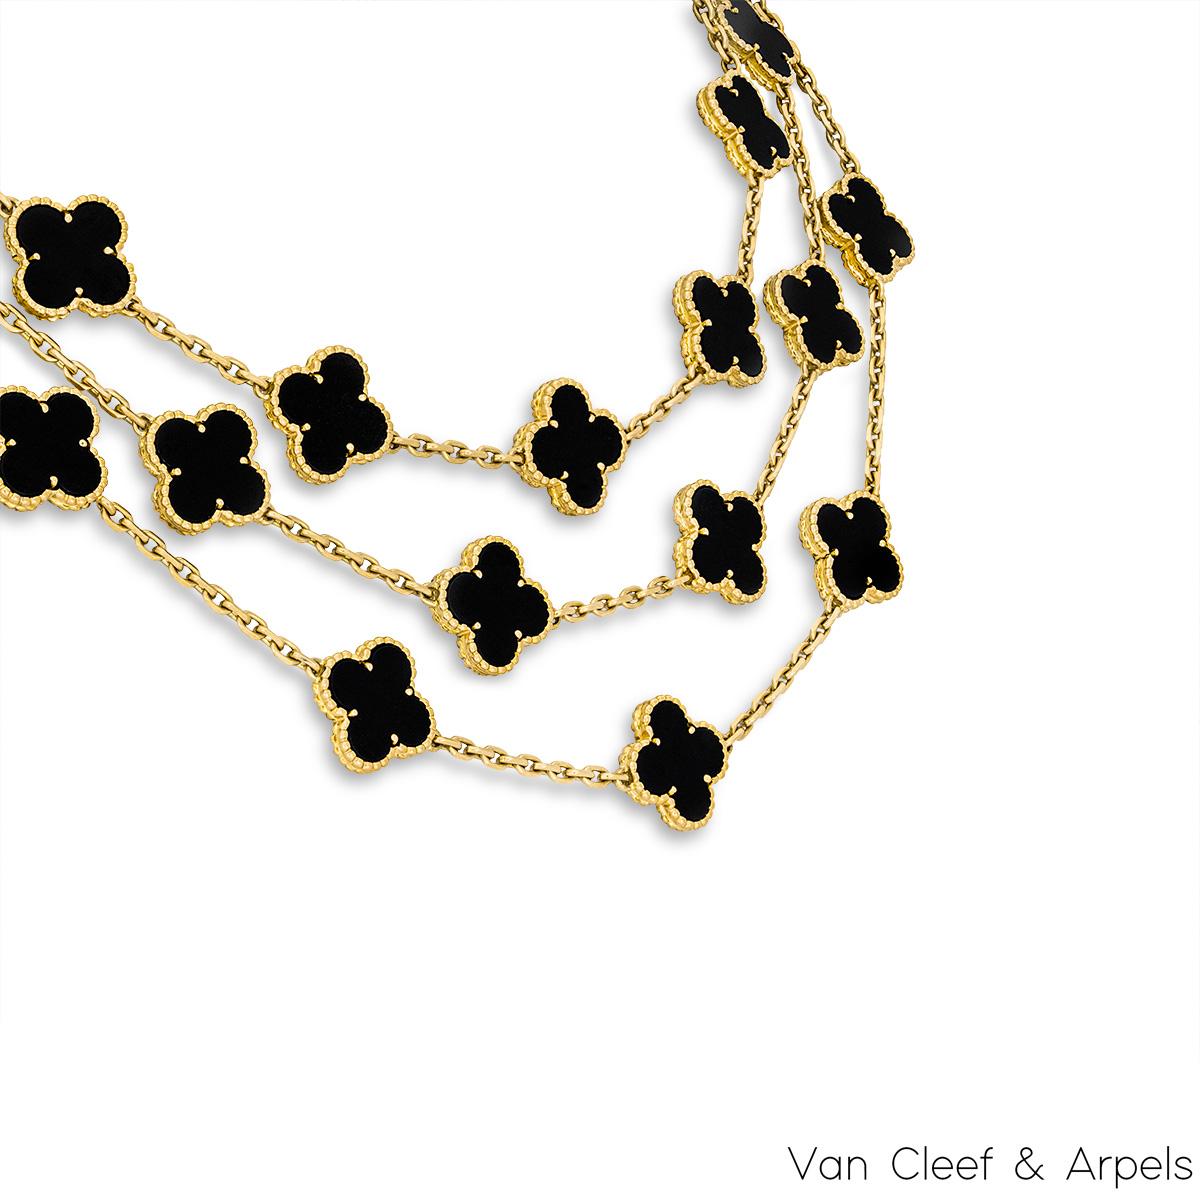 Collier iconique en or jaune 18 carats de Van Cleef & Arpels de la collection Vintage Alhambra. Le collier présente 29 motifs emblématiques de trèfle à quatre feuilles, chacun étant serti d'un bord perlé et d'une incrustation d'onyx, disposés sur